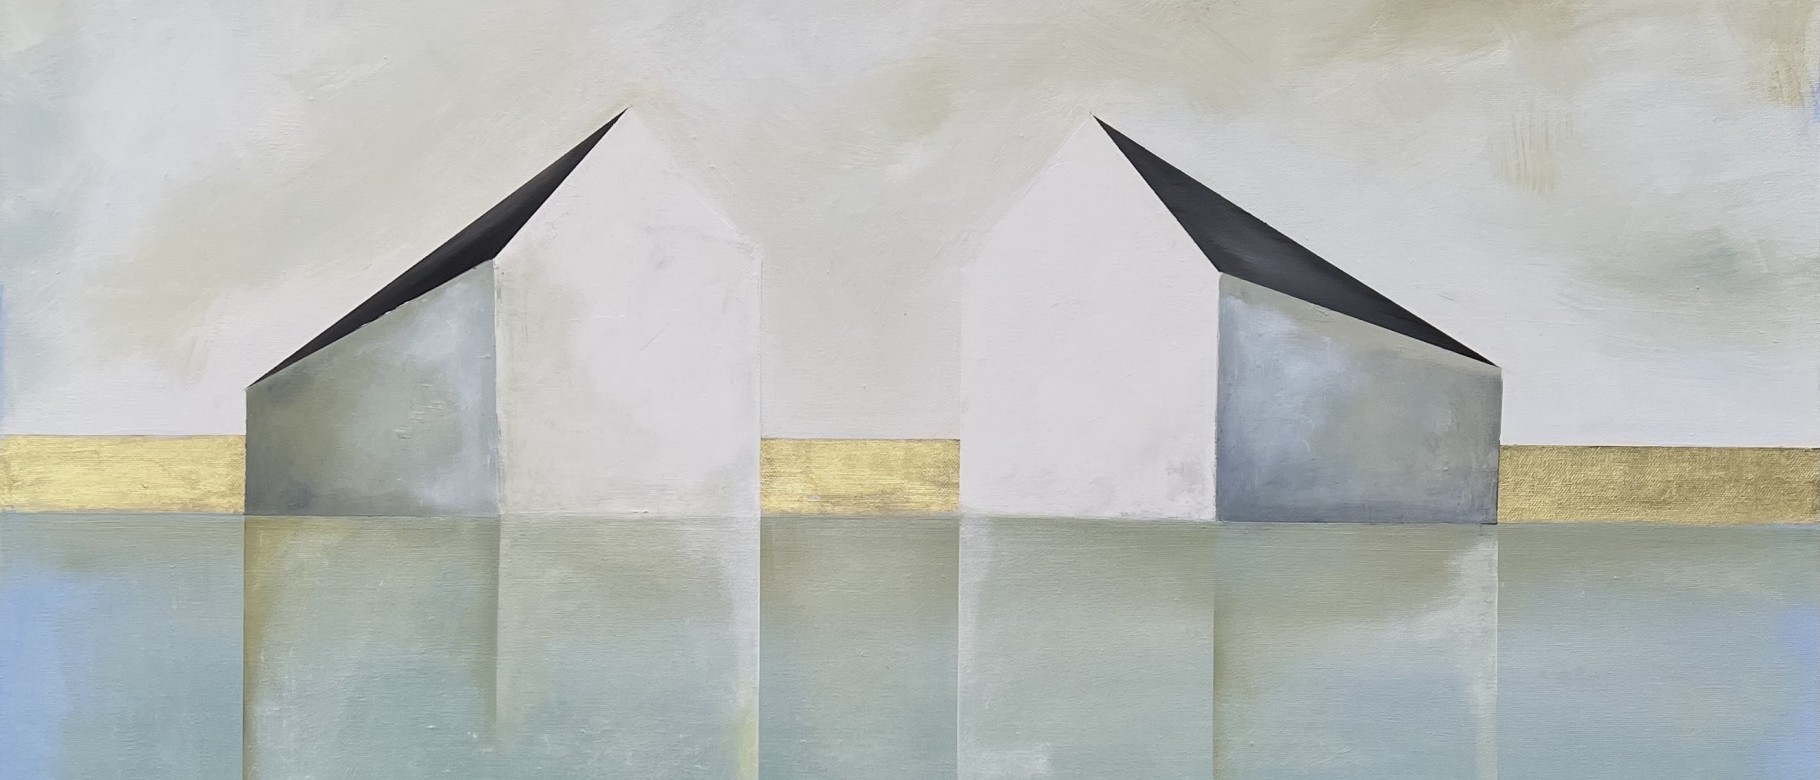 A painting of buildings by Ingunn Milla Joergensen